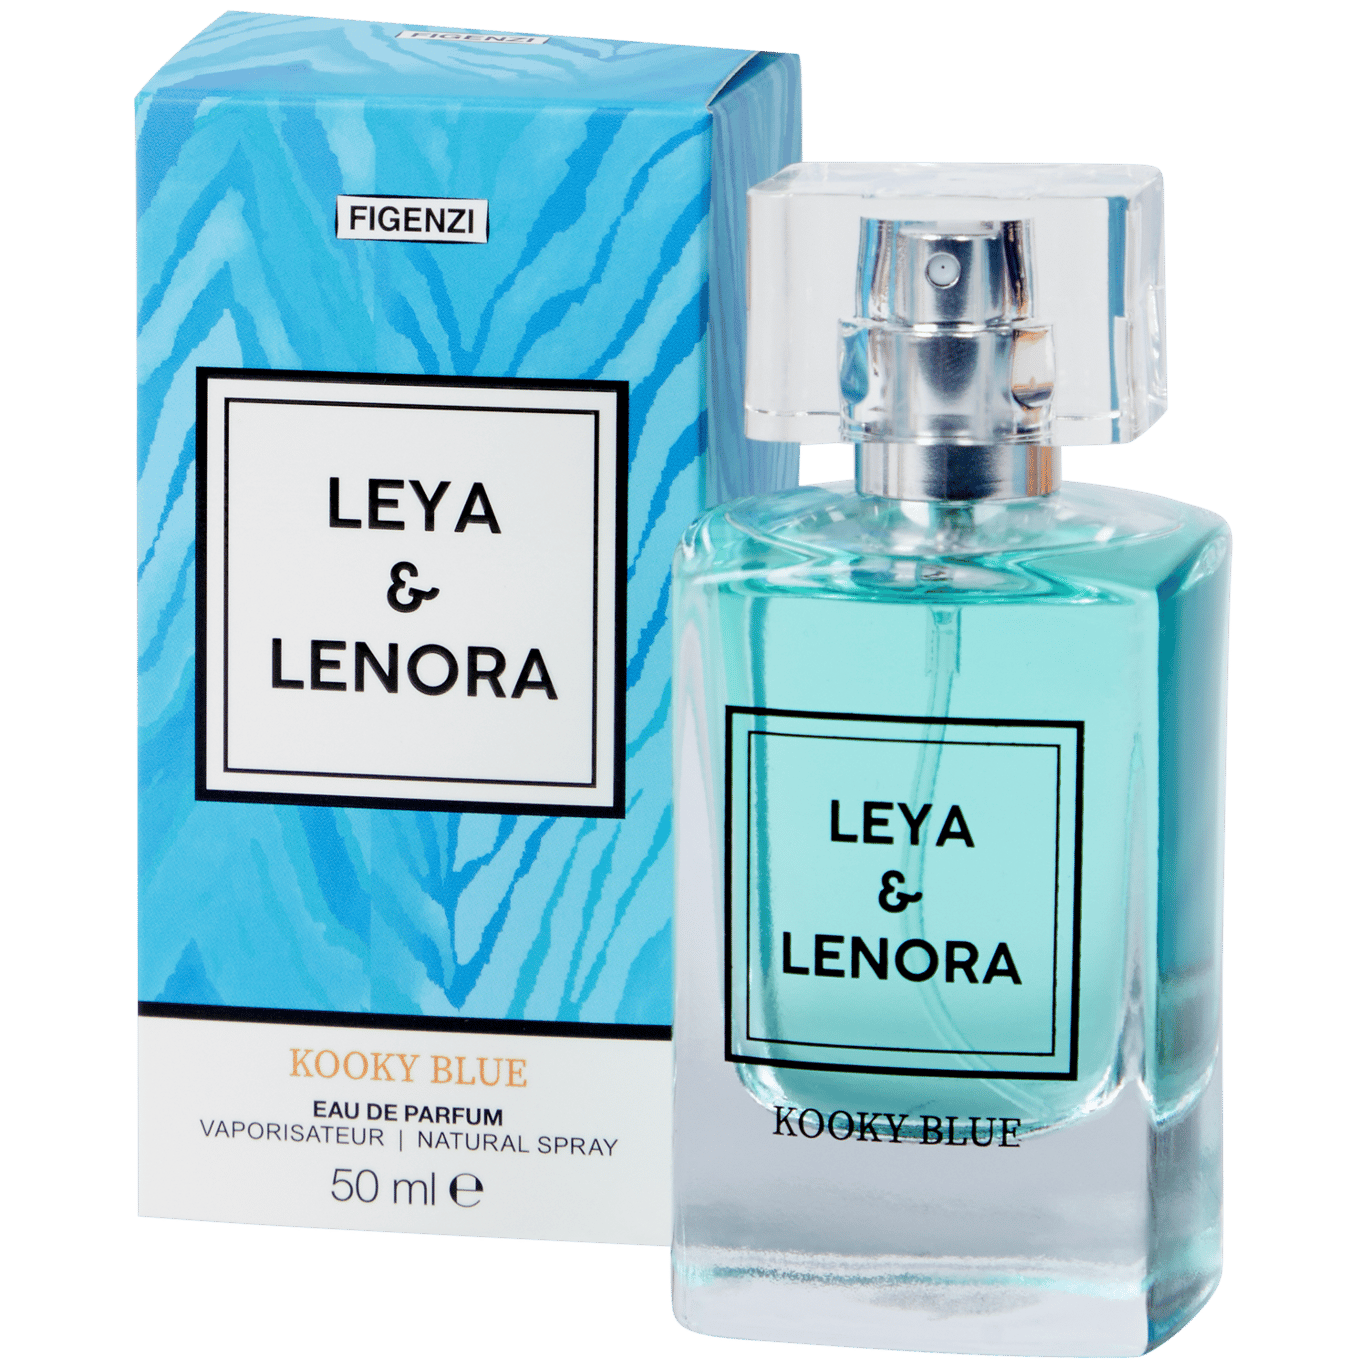 Figenzi Leya & Lenora Eau de Parfum